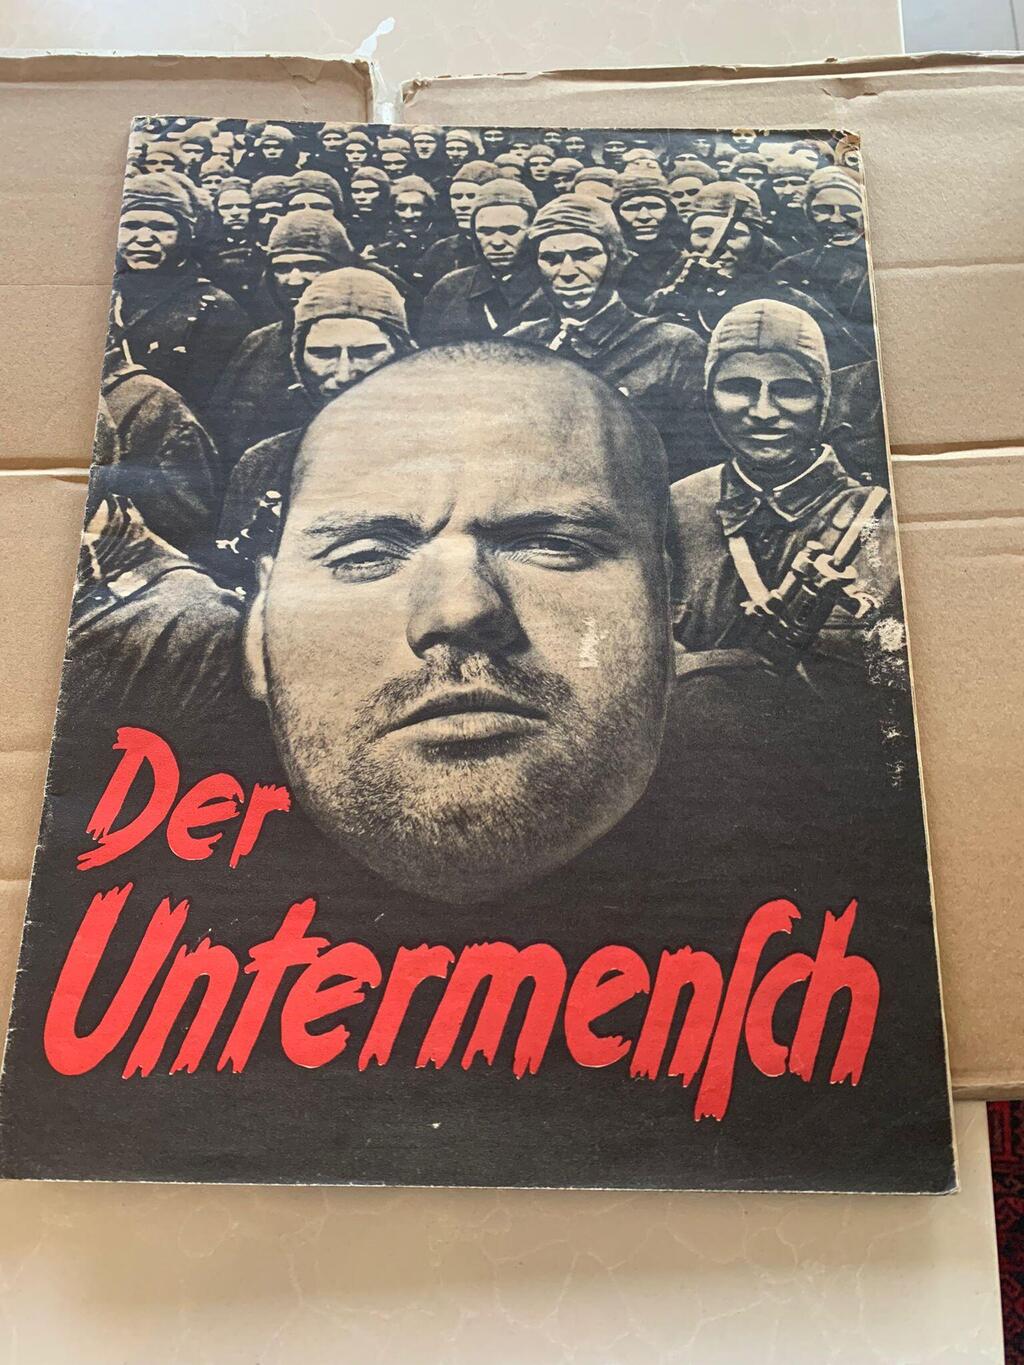 חוברת שהוציא המשטר הנאצי, שמטרתה להסביר לגרמני מה ההבדל בין ארי ל"תתי אדם"